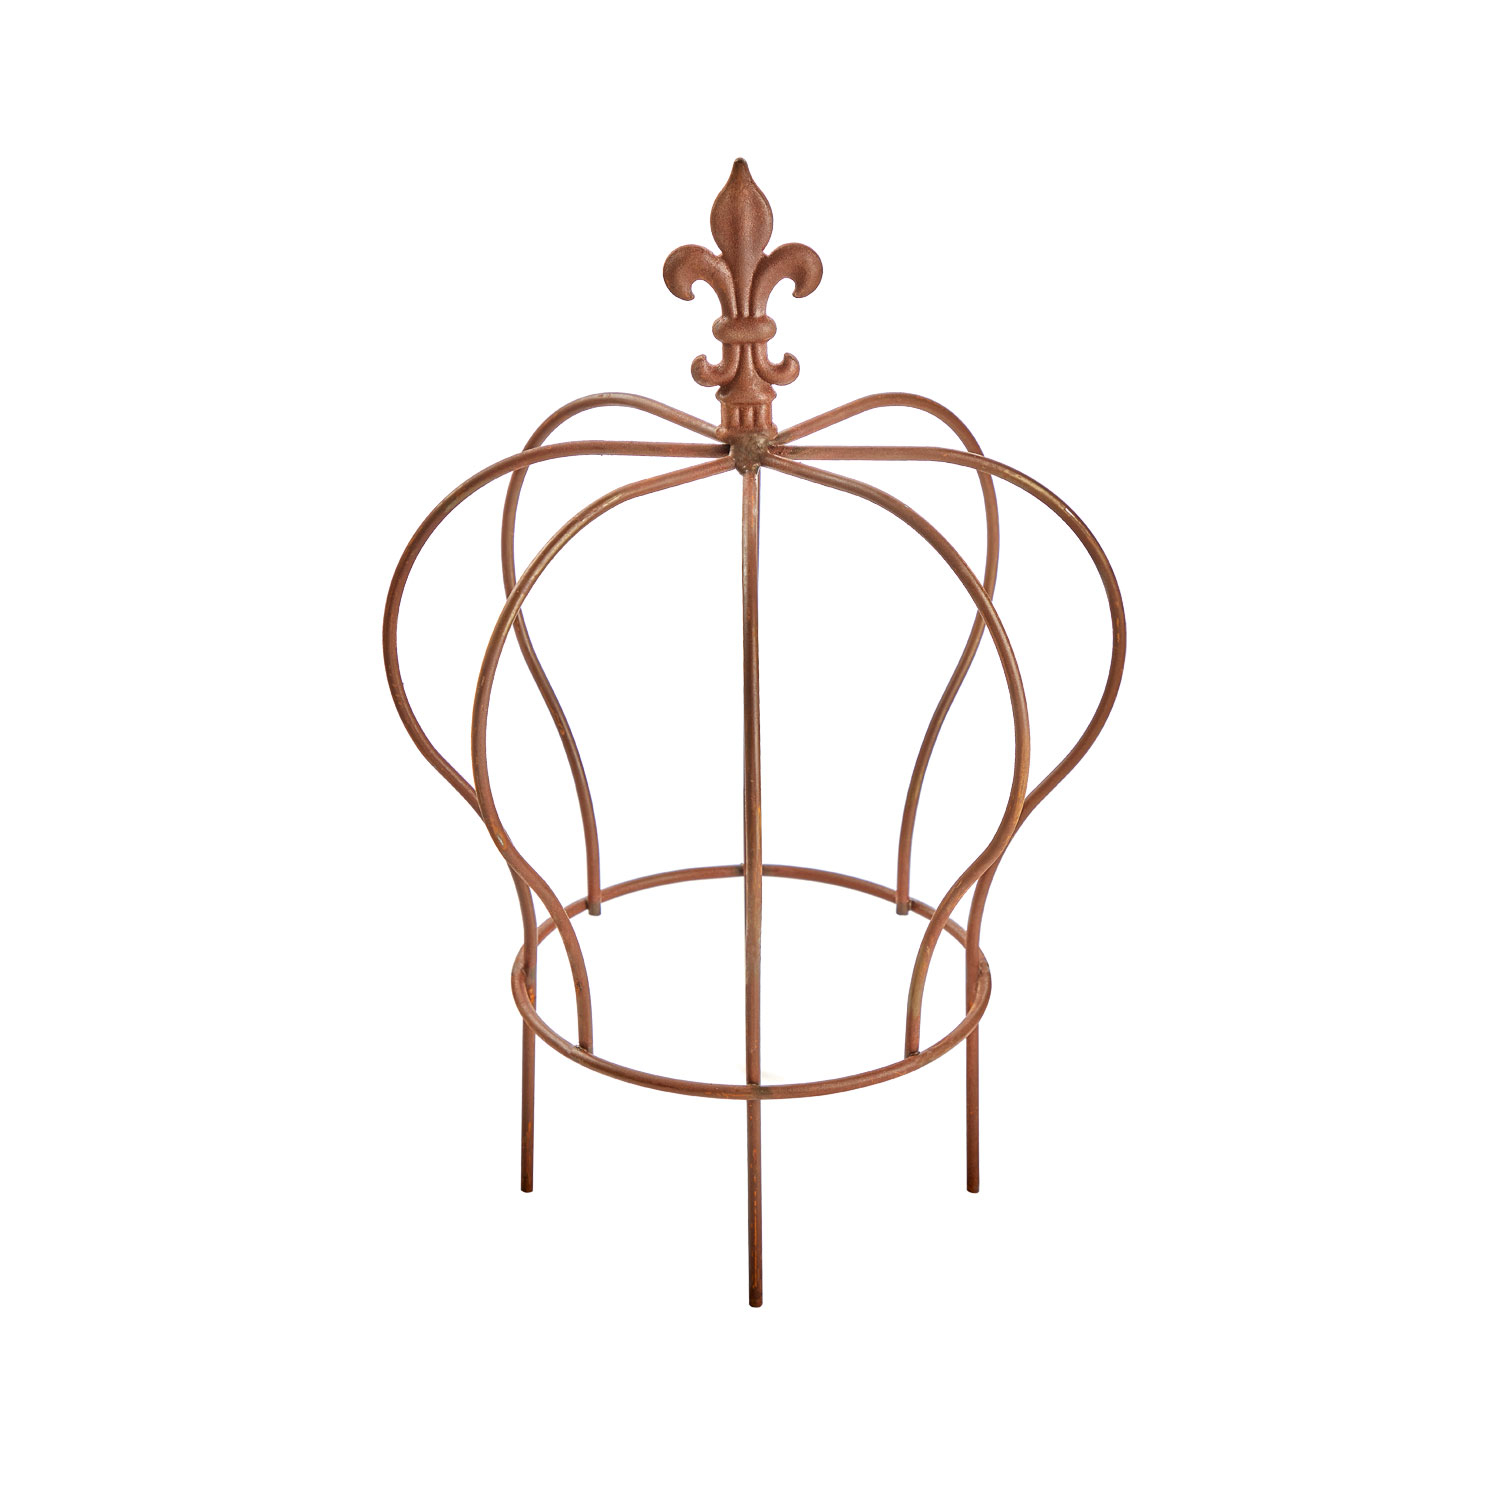 Gartenstecker „Krone“, Produktbild 1